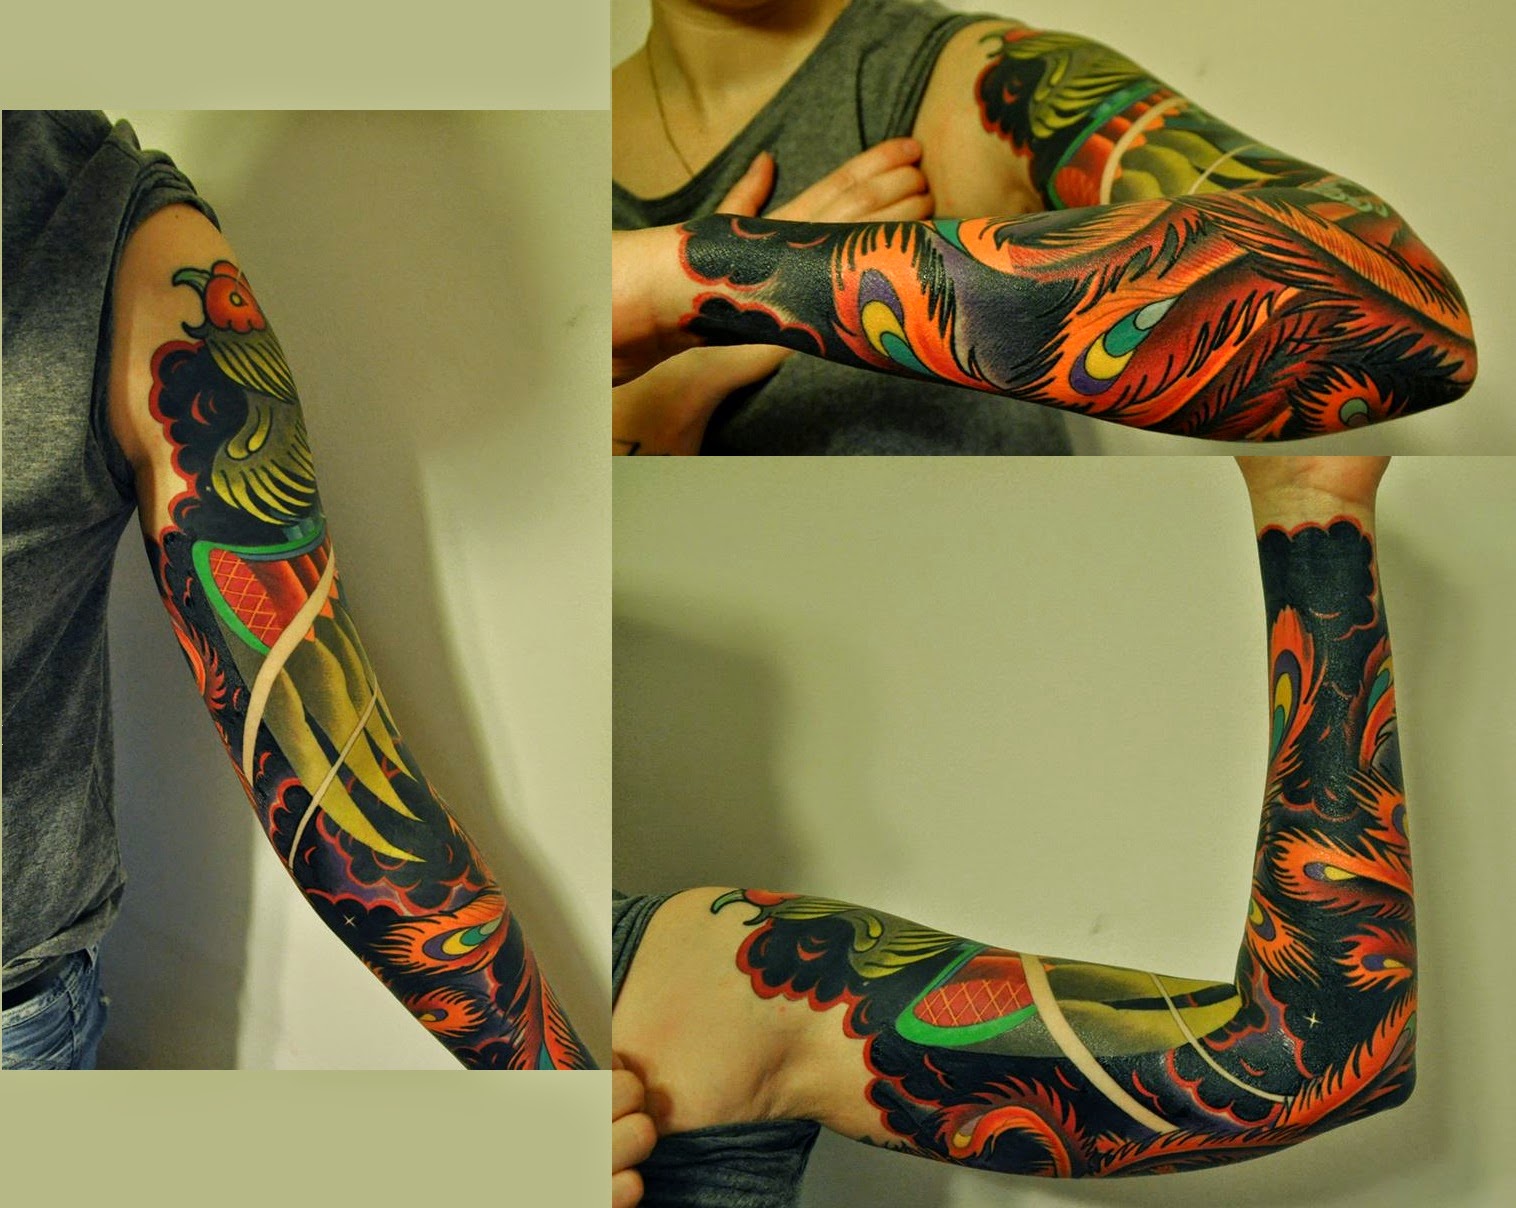 surowiec2 - Najpiękniejsze tatuaże: kobiece rękawy